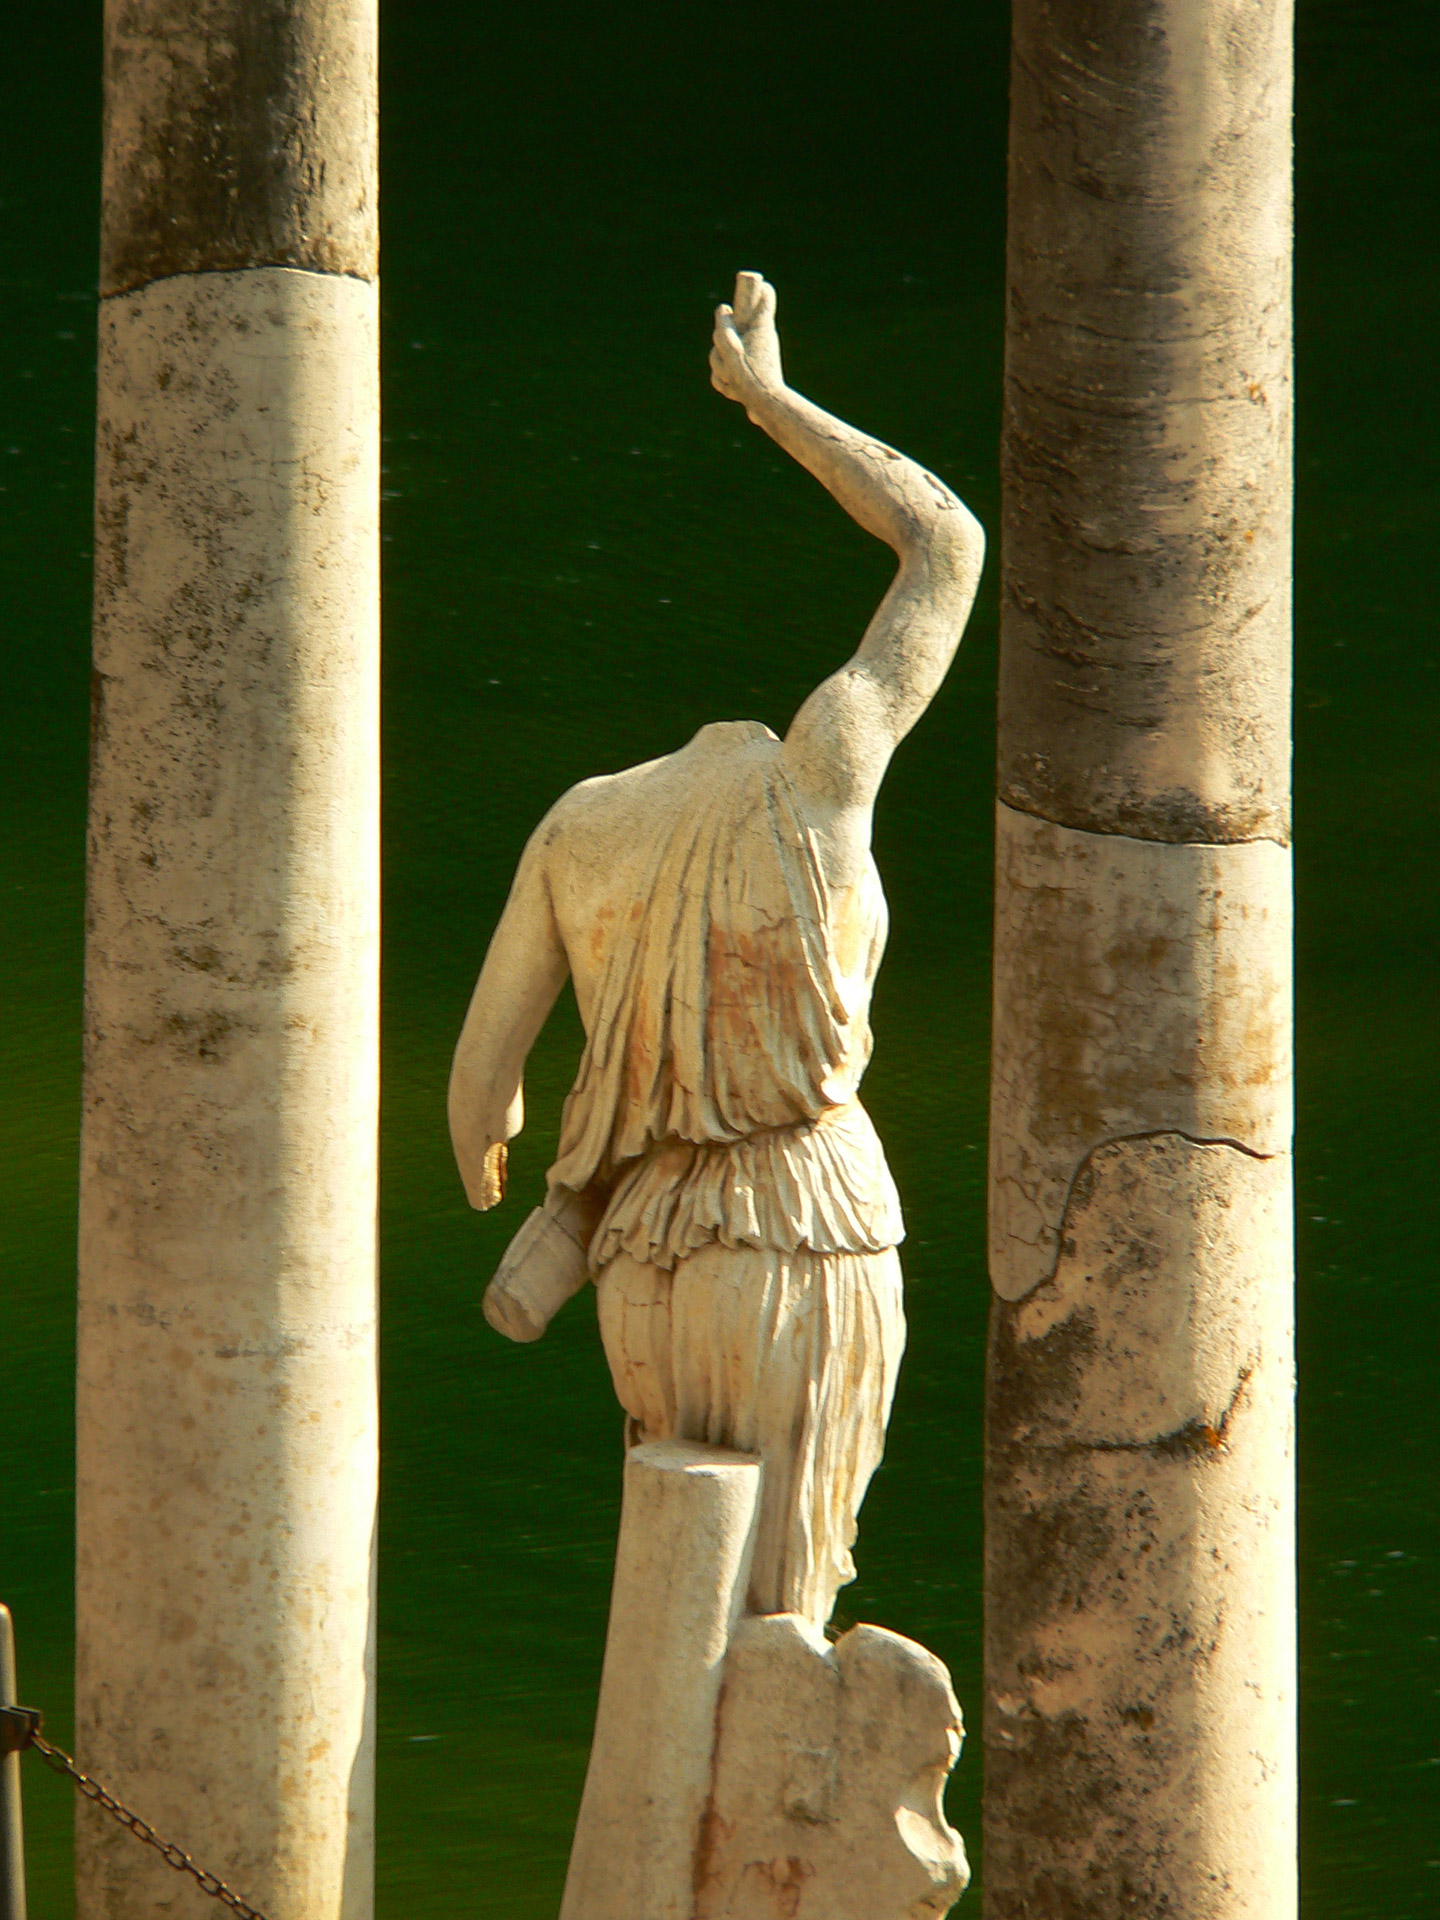 architektura, Rzym, Tivoli, Canopo, posągi antyczne, podróże, podróże po Europie, fotografia Monika Turska